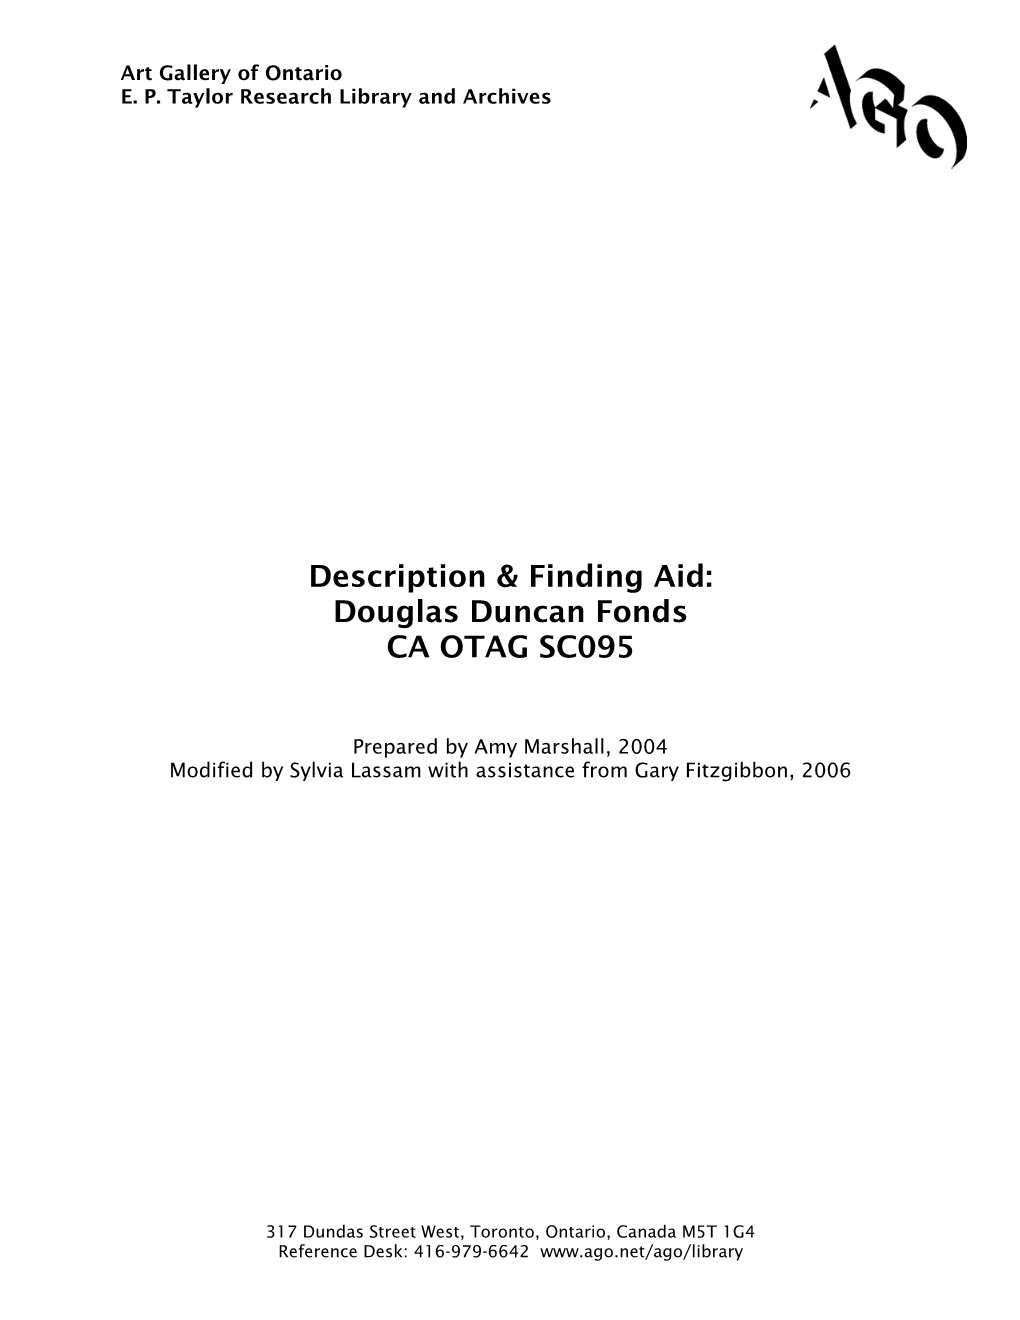 Douglas Duncan Fonds CA OTAG SC095